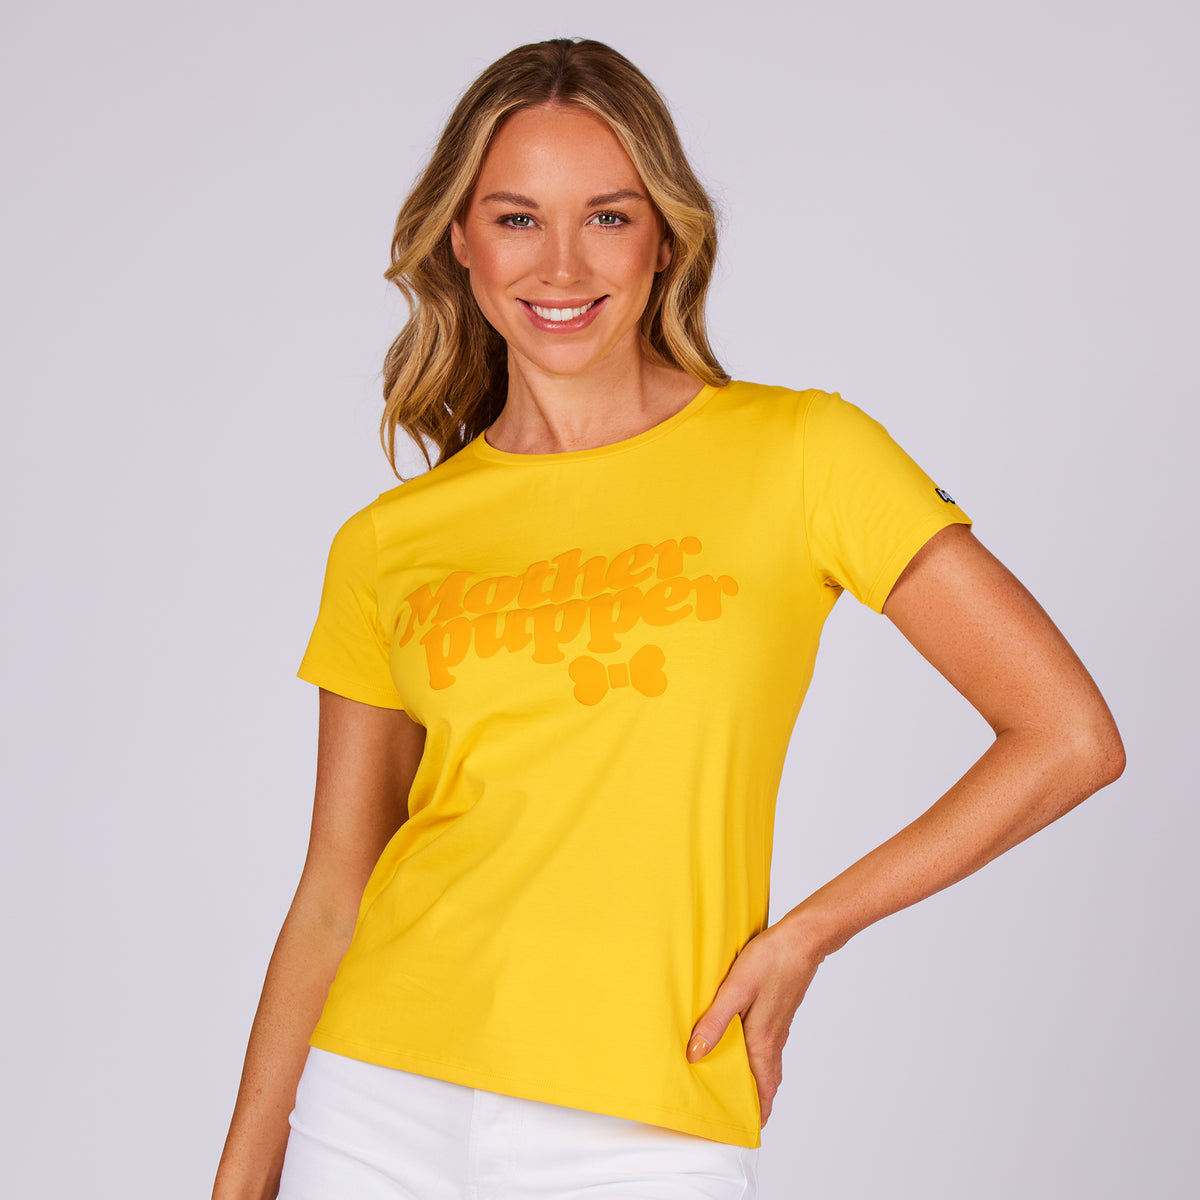 Tee Shirt Femme Sport, Tops Femmes T-Shirt Fleurie Pissenlit De